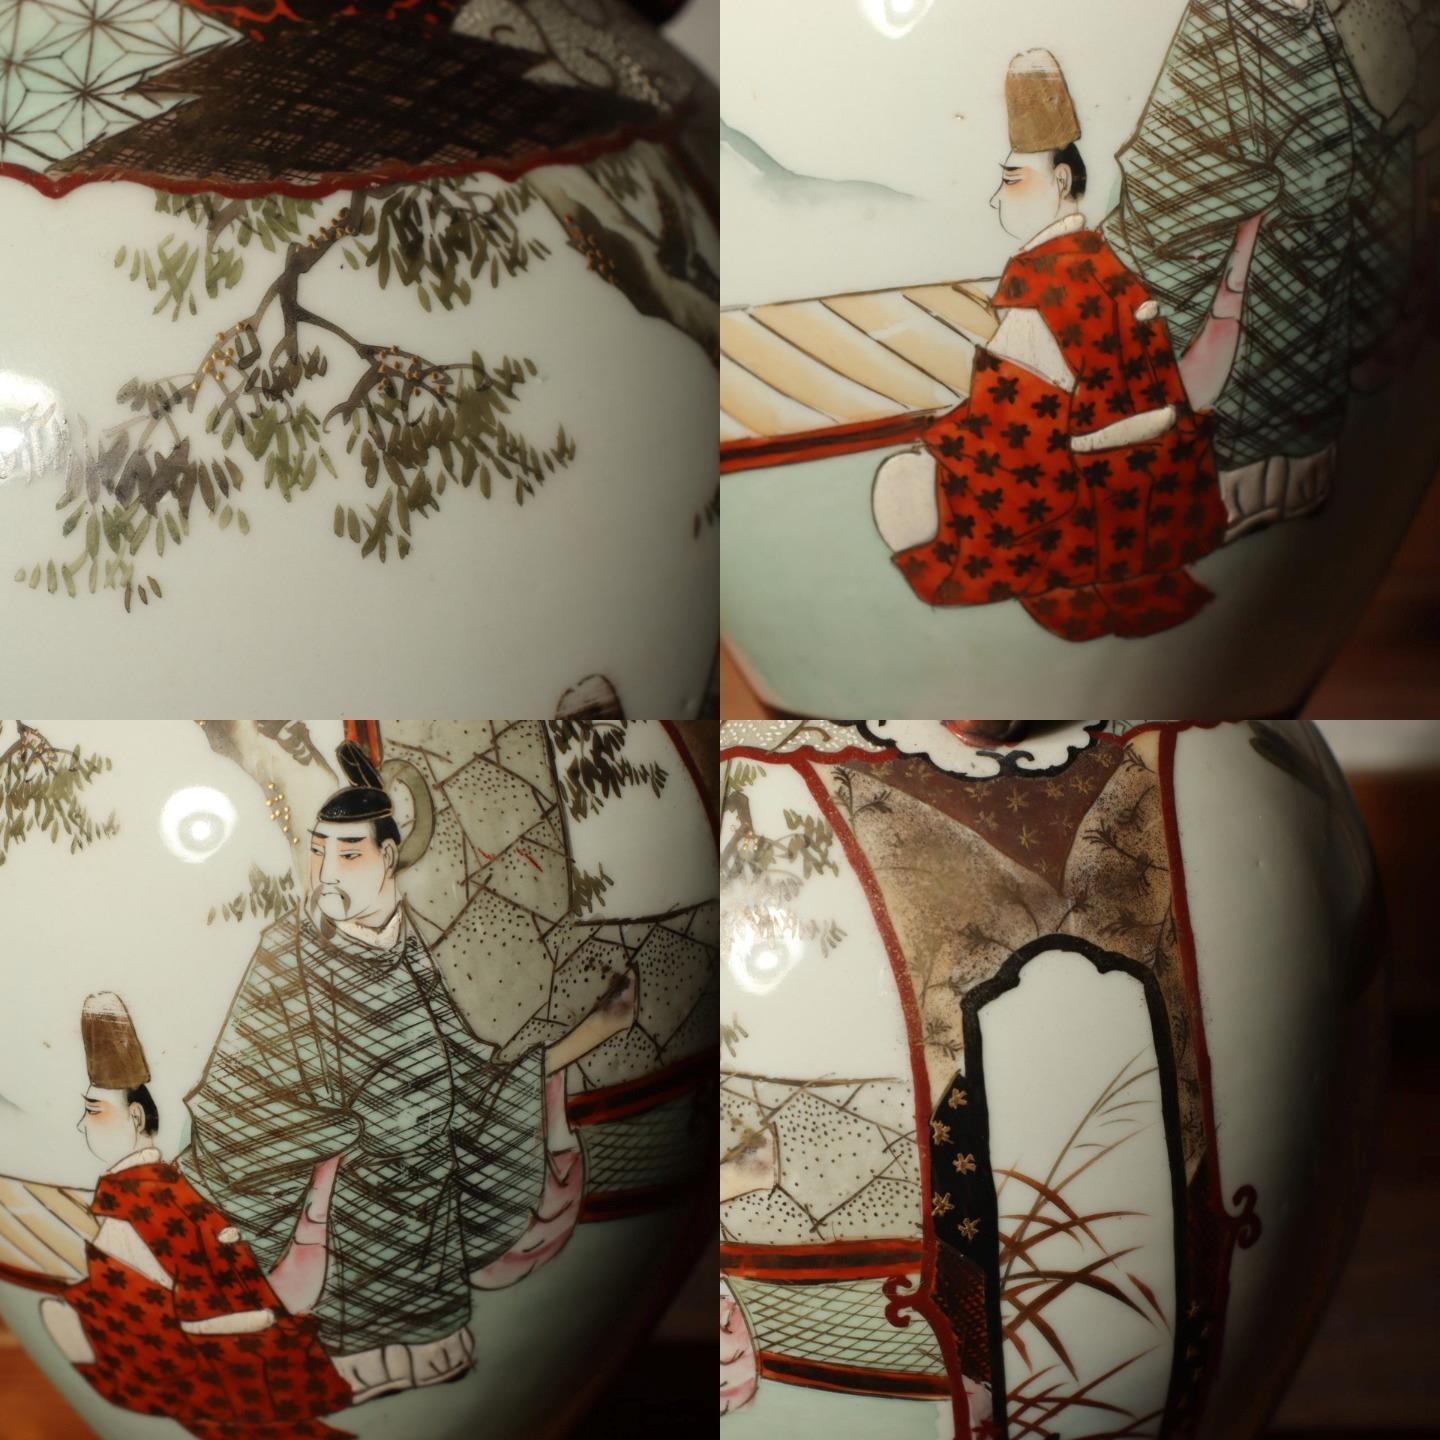 Japanese Antique Kutani vase flower porcelain Kaga Ishikawa Late Meiji PV197